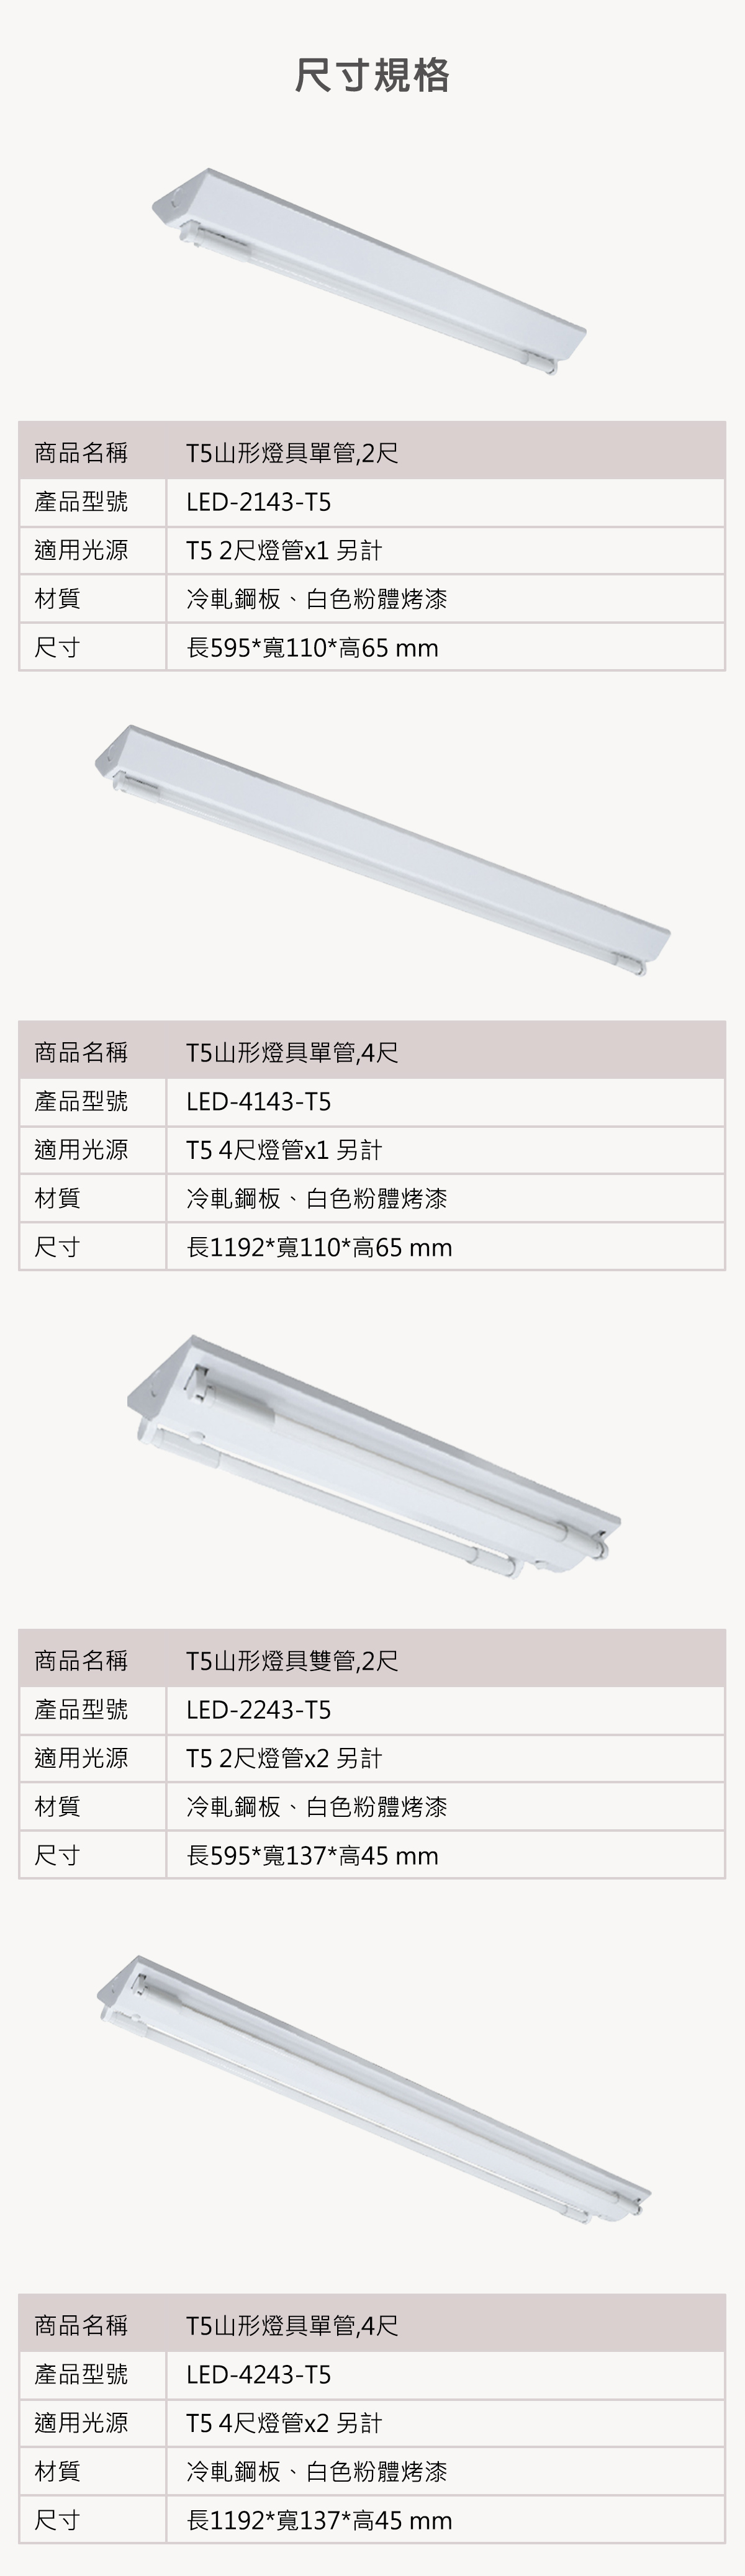 【舞光】LED T5 燈管式山形燈具(免安定器) 附燈管 全電壓